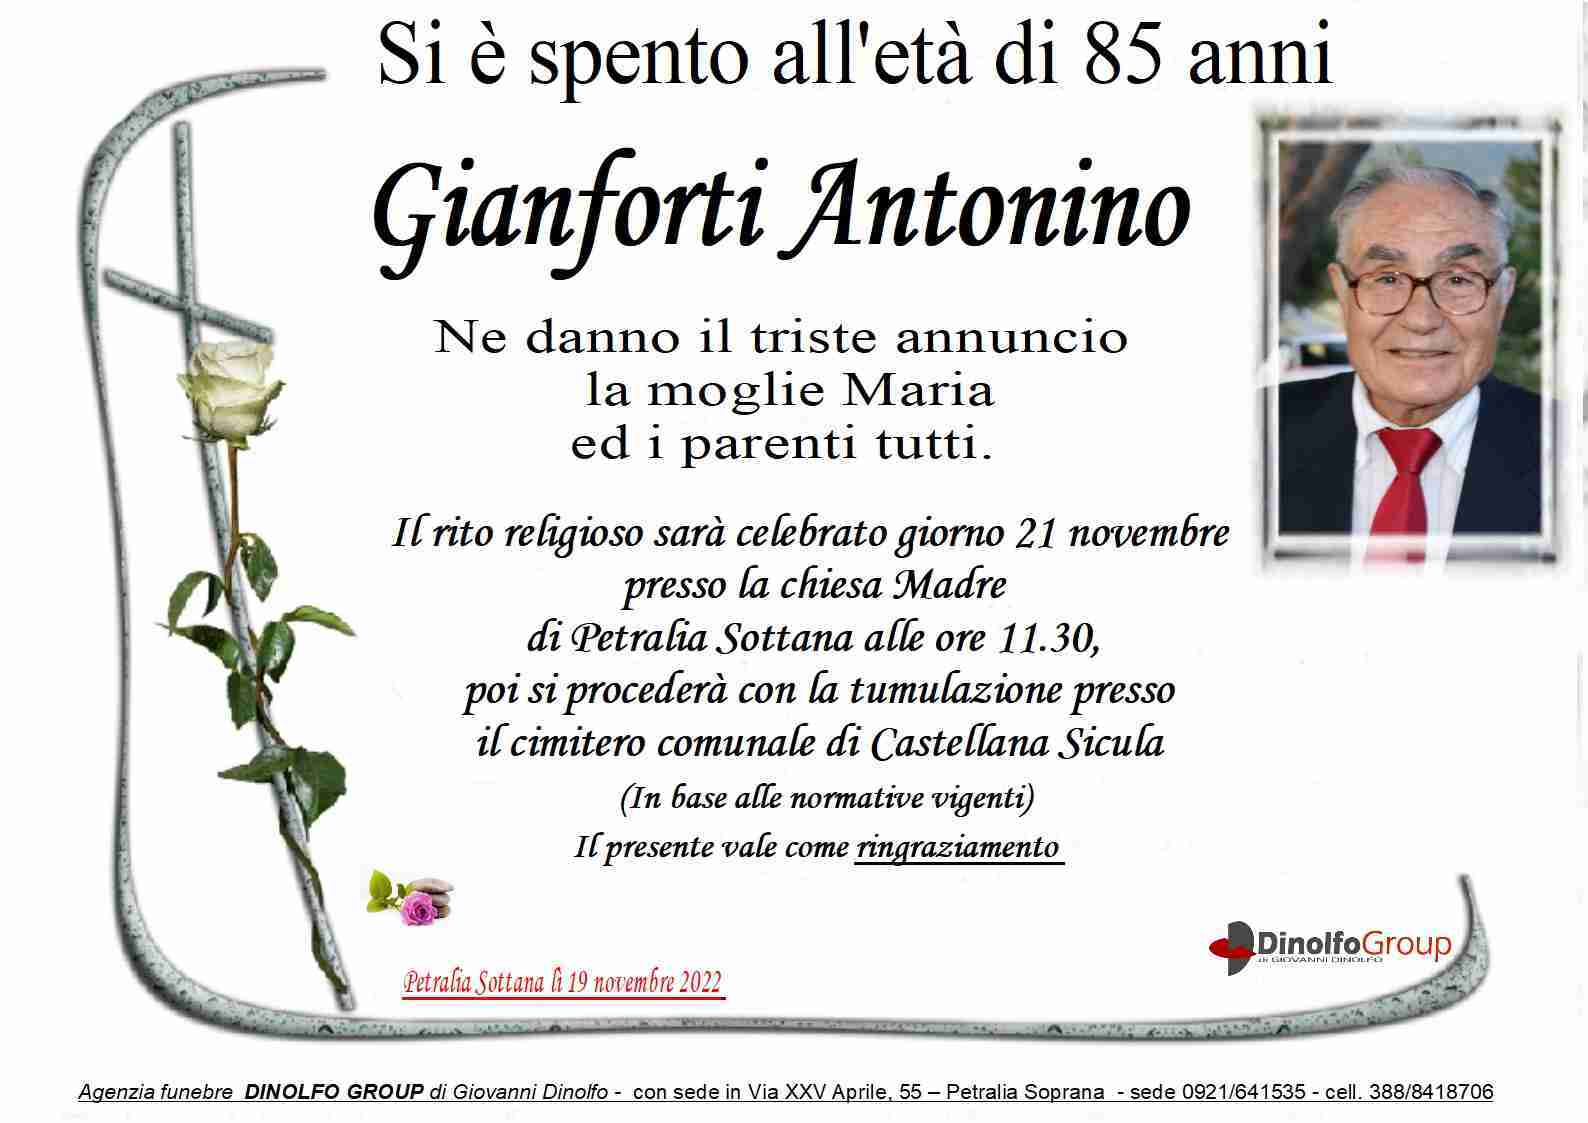 Antonino Gianforti